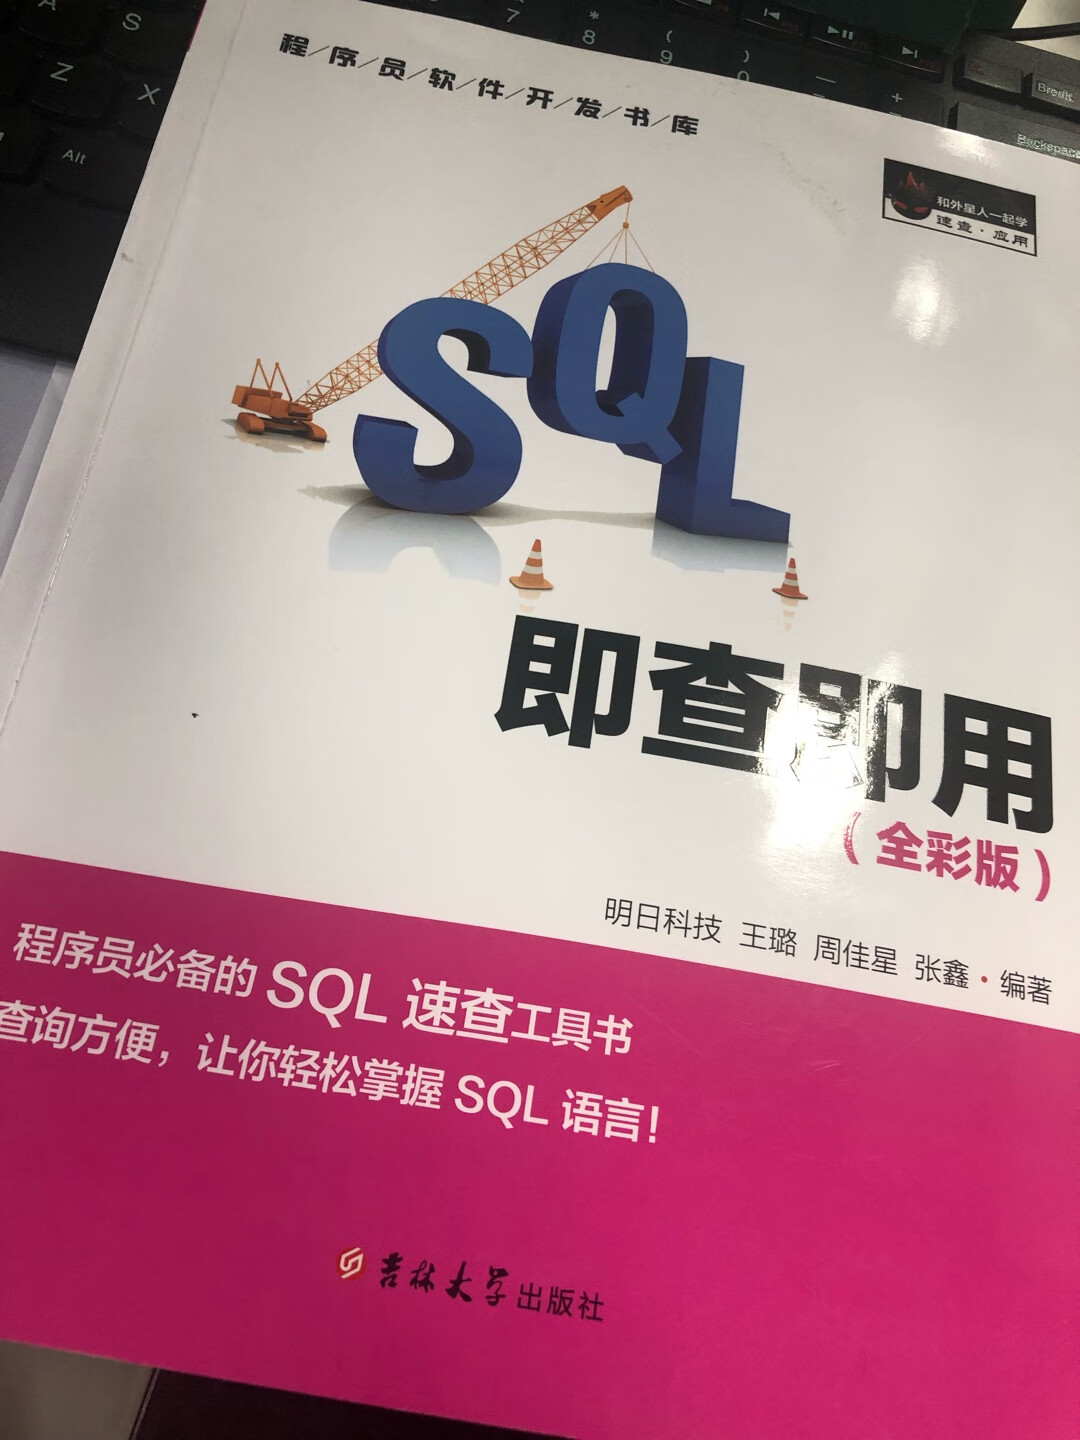 为了重新复习数据库SQL买的书书的纸张很好在工作上需要什么样的SQL也可以很快查到而且对应的数据库有对应的书上实例的SQL库真的太方便了按照书上的实例 可以一步一步实践上机实践真的太重要了推荐购买这本书